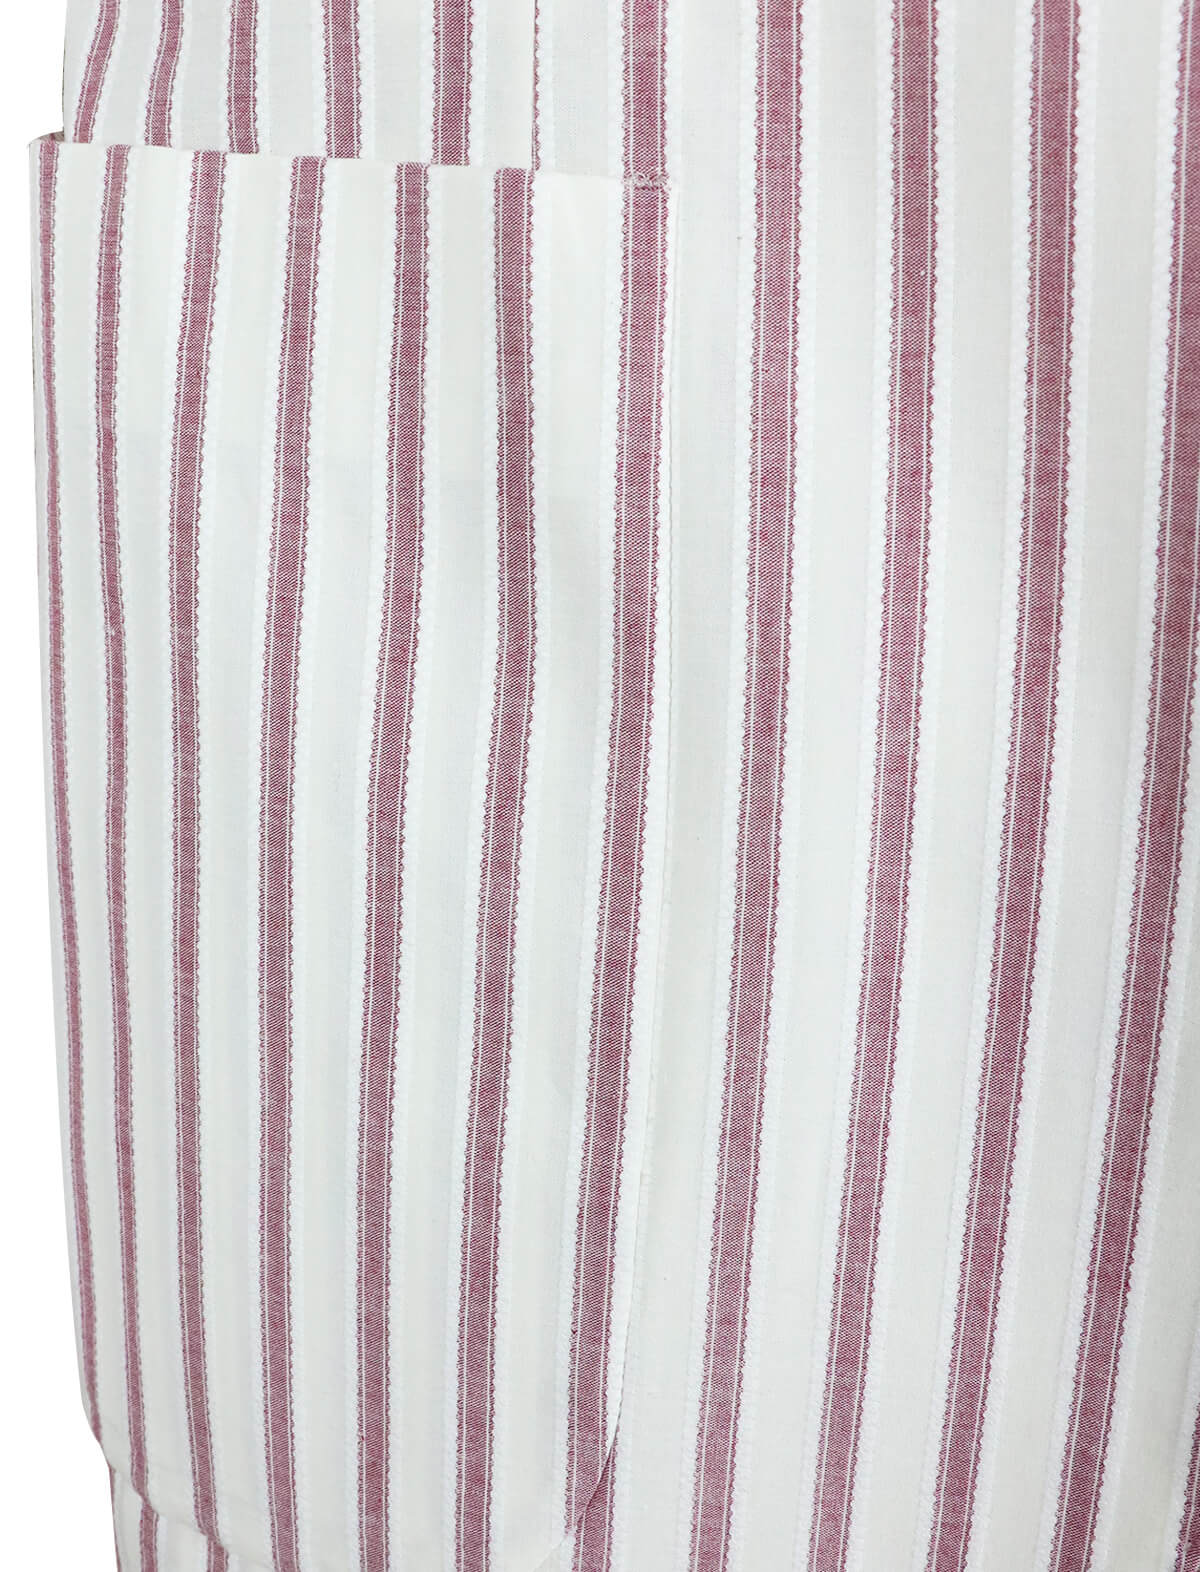 CARUSO Ponza Blazer in White/Red Stripes